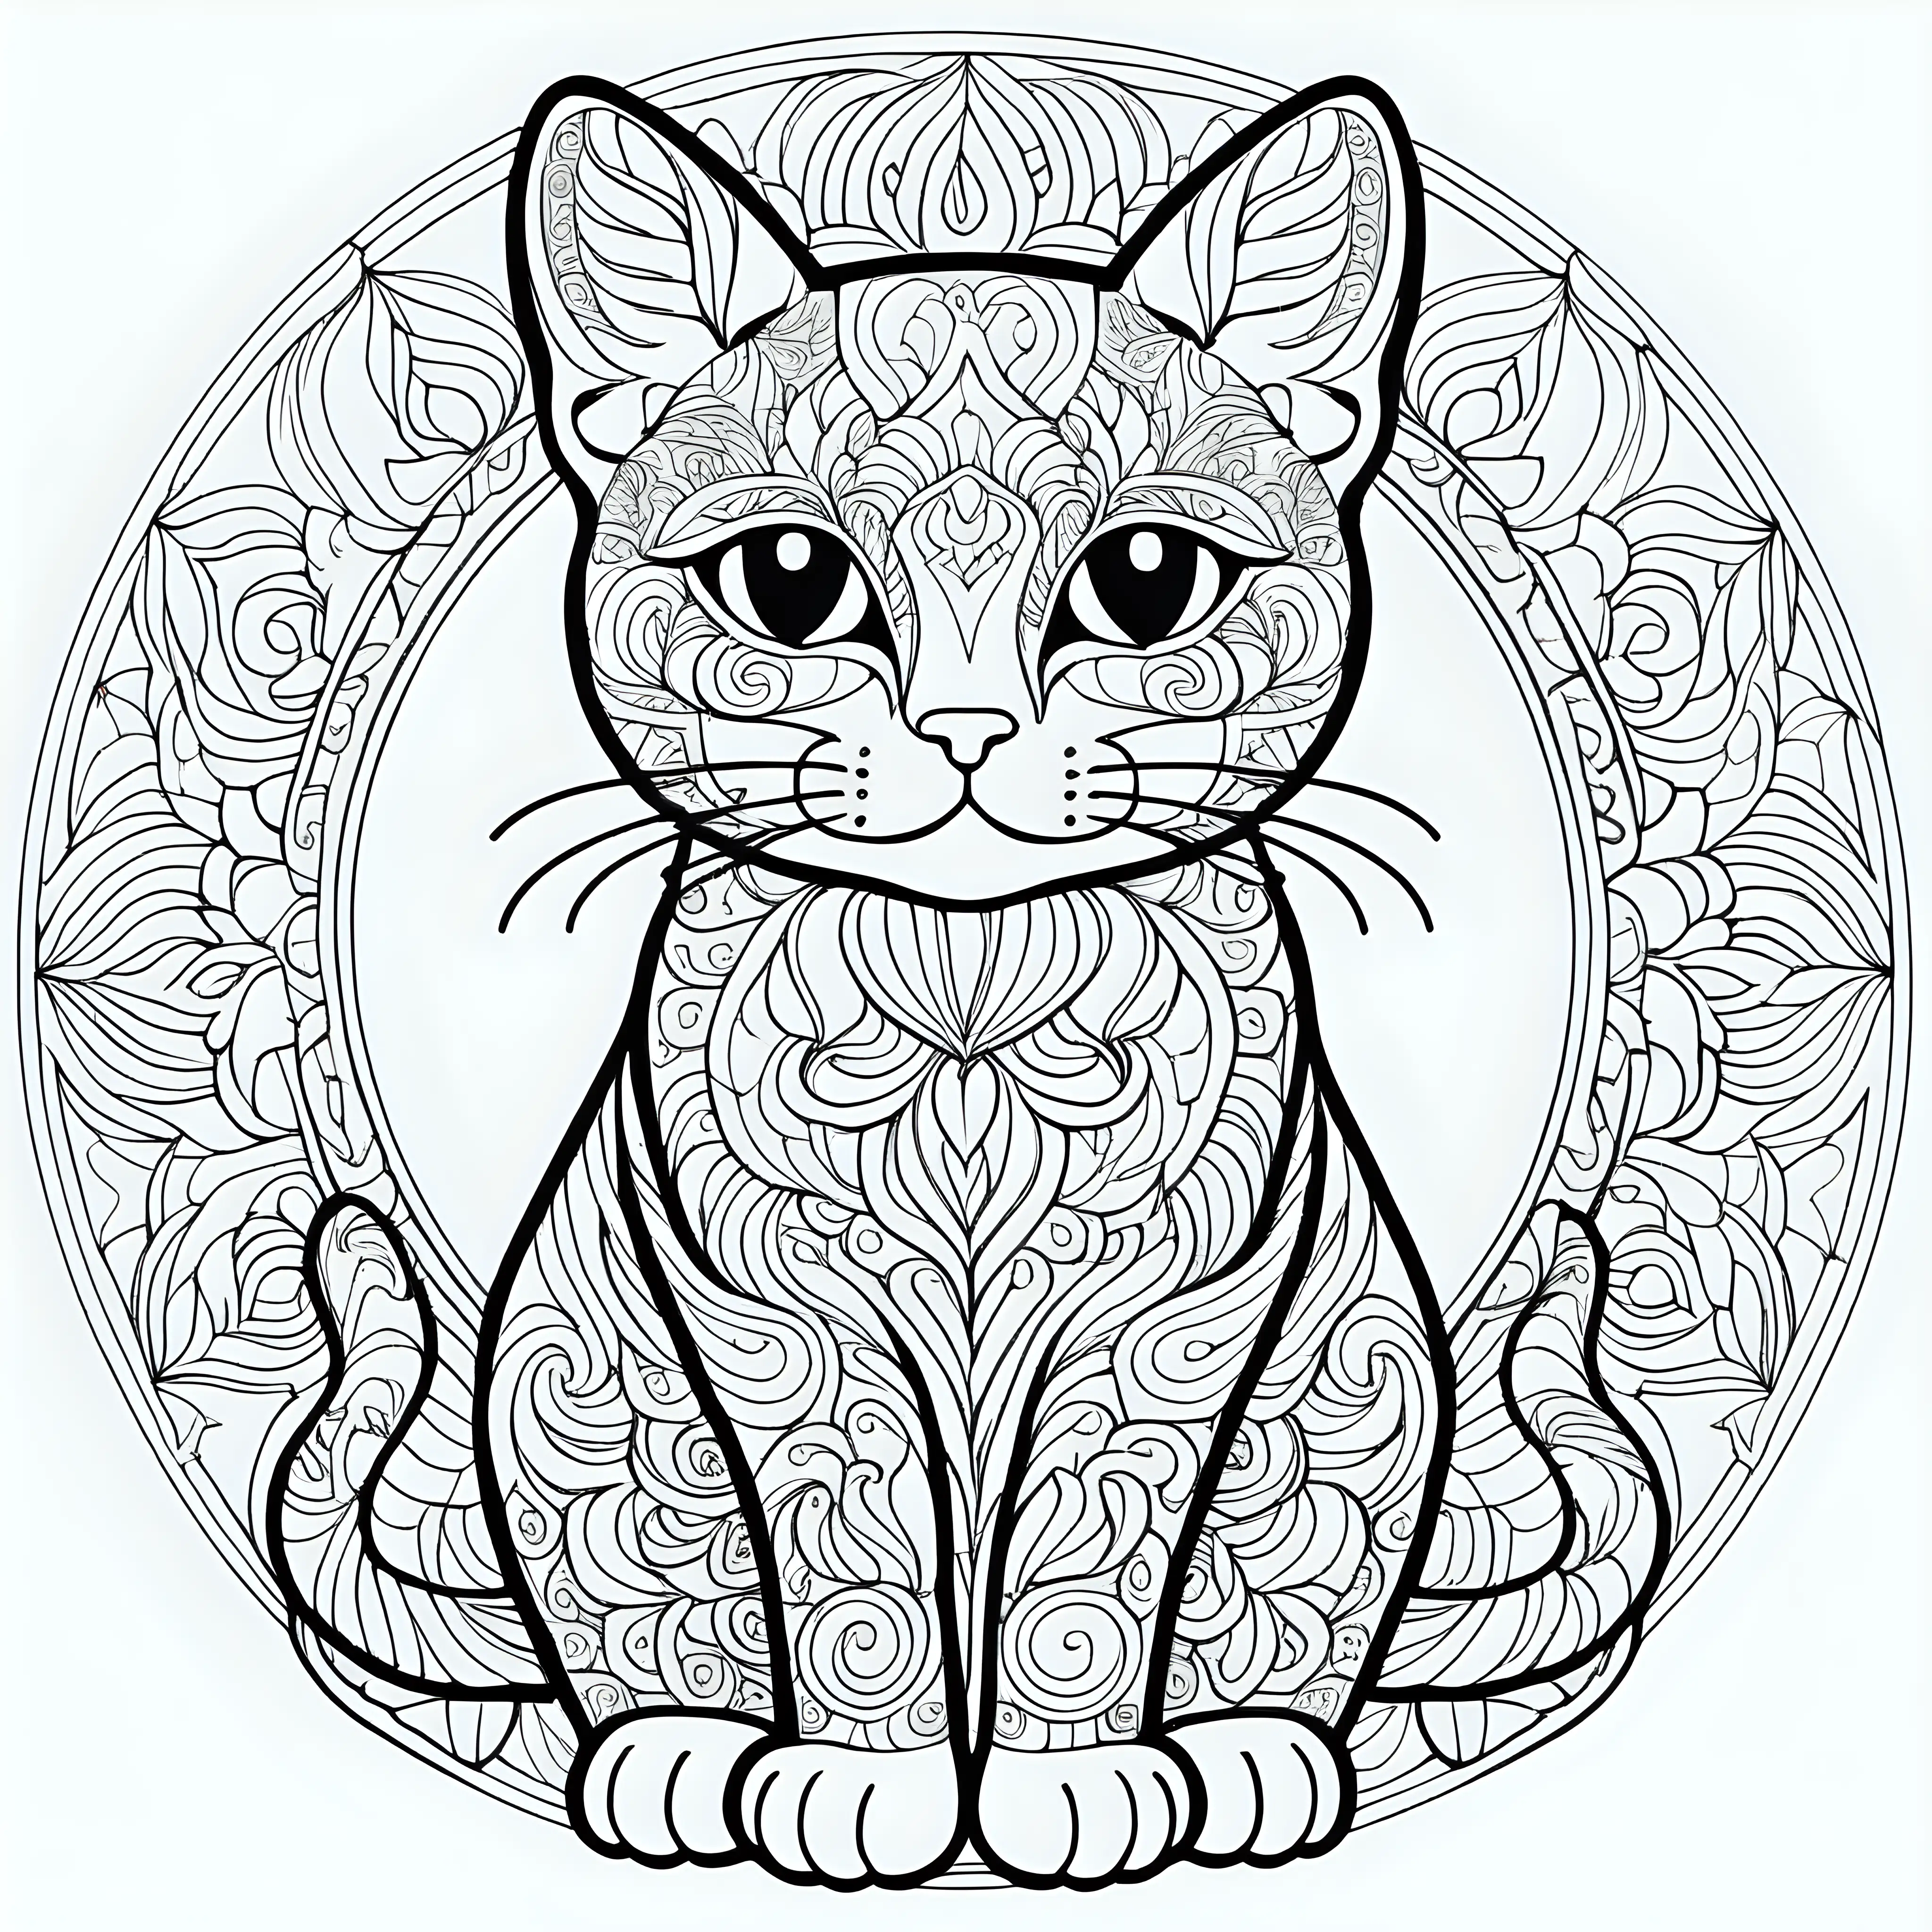 Intricate Full Body Cat Mandala Vector Pattern for Coloring Book Art